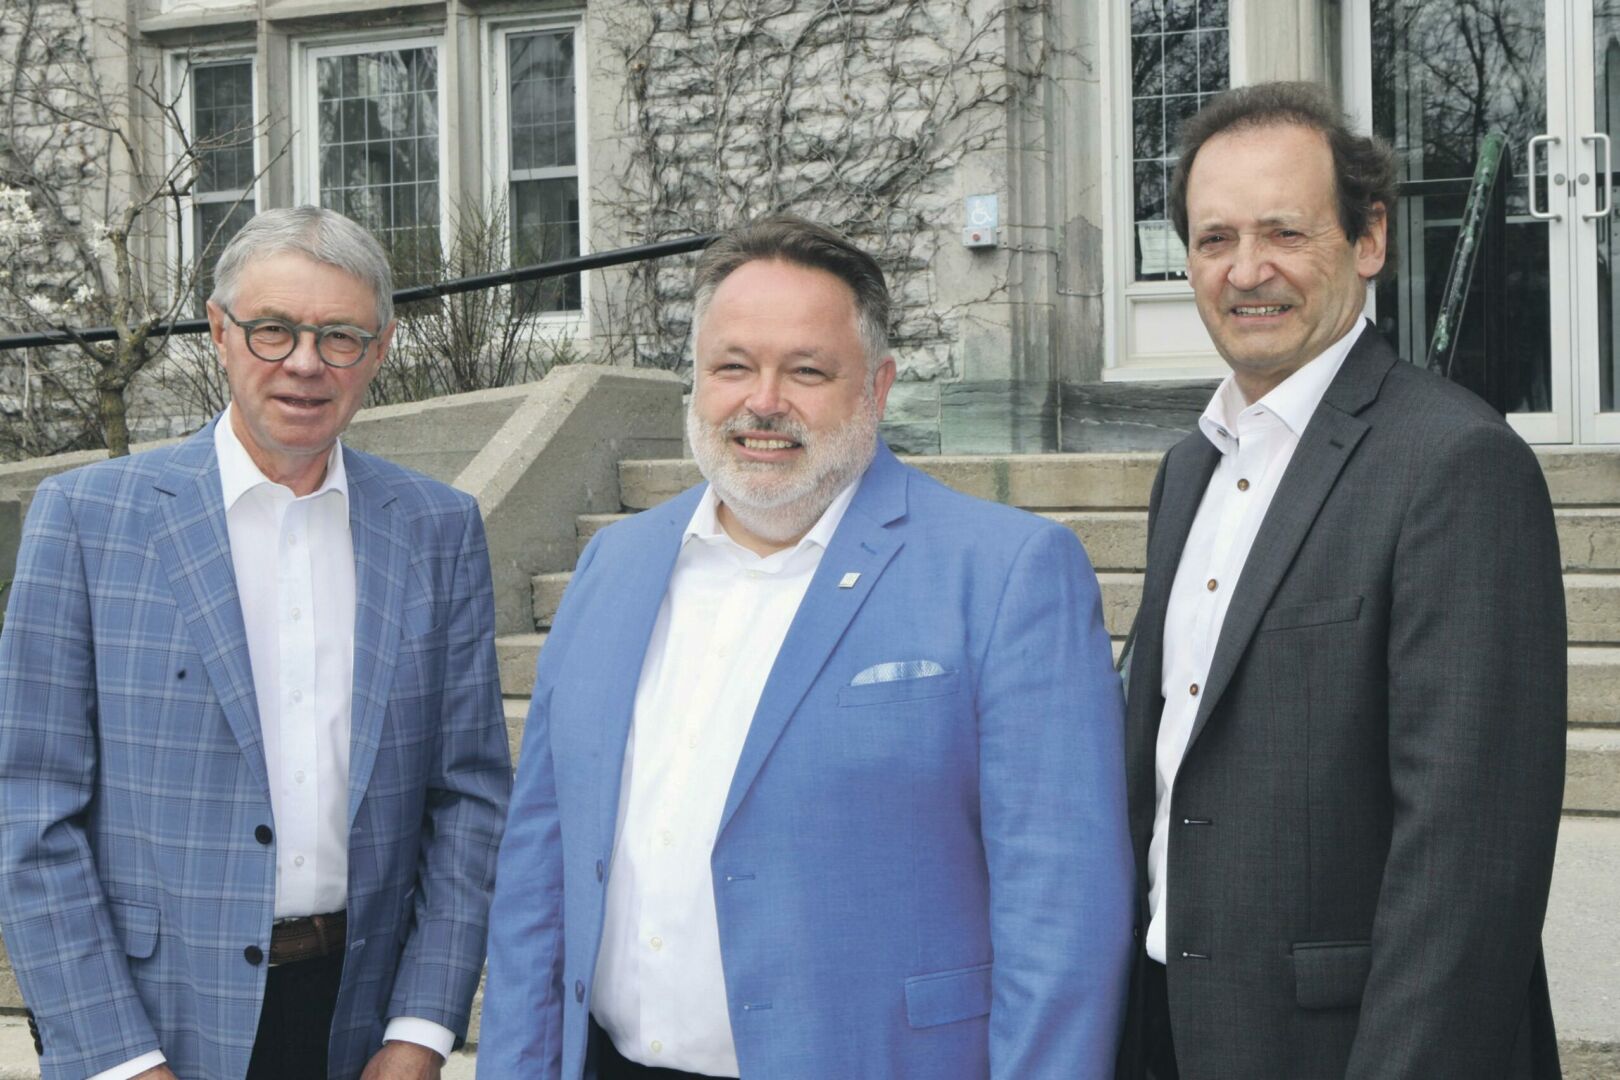 Le maire de Saint-Hyacinthe, André Beauregard, entouré des coprésidents d’honneur, Claude Corbeil (à gauche) et Yvon Pinsonneault (à droite).
Photo Robert Gosselin | Le Courrier ©